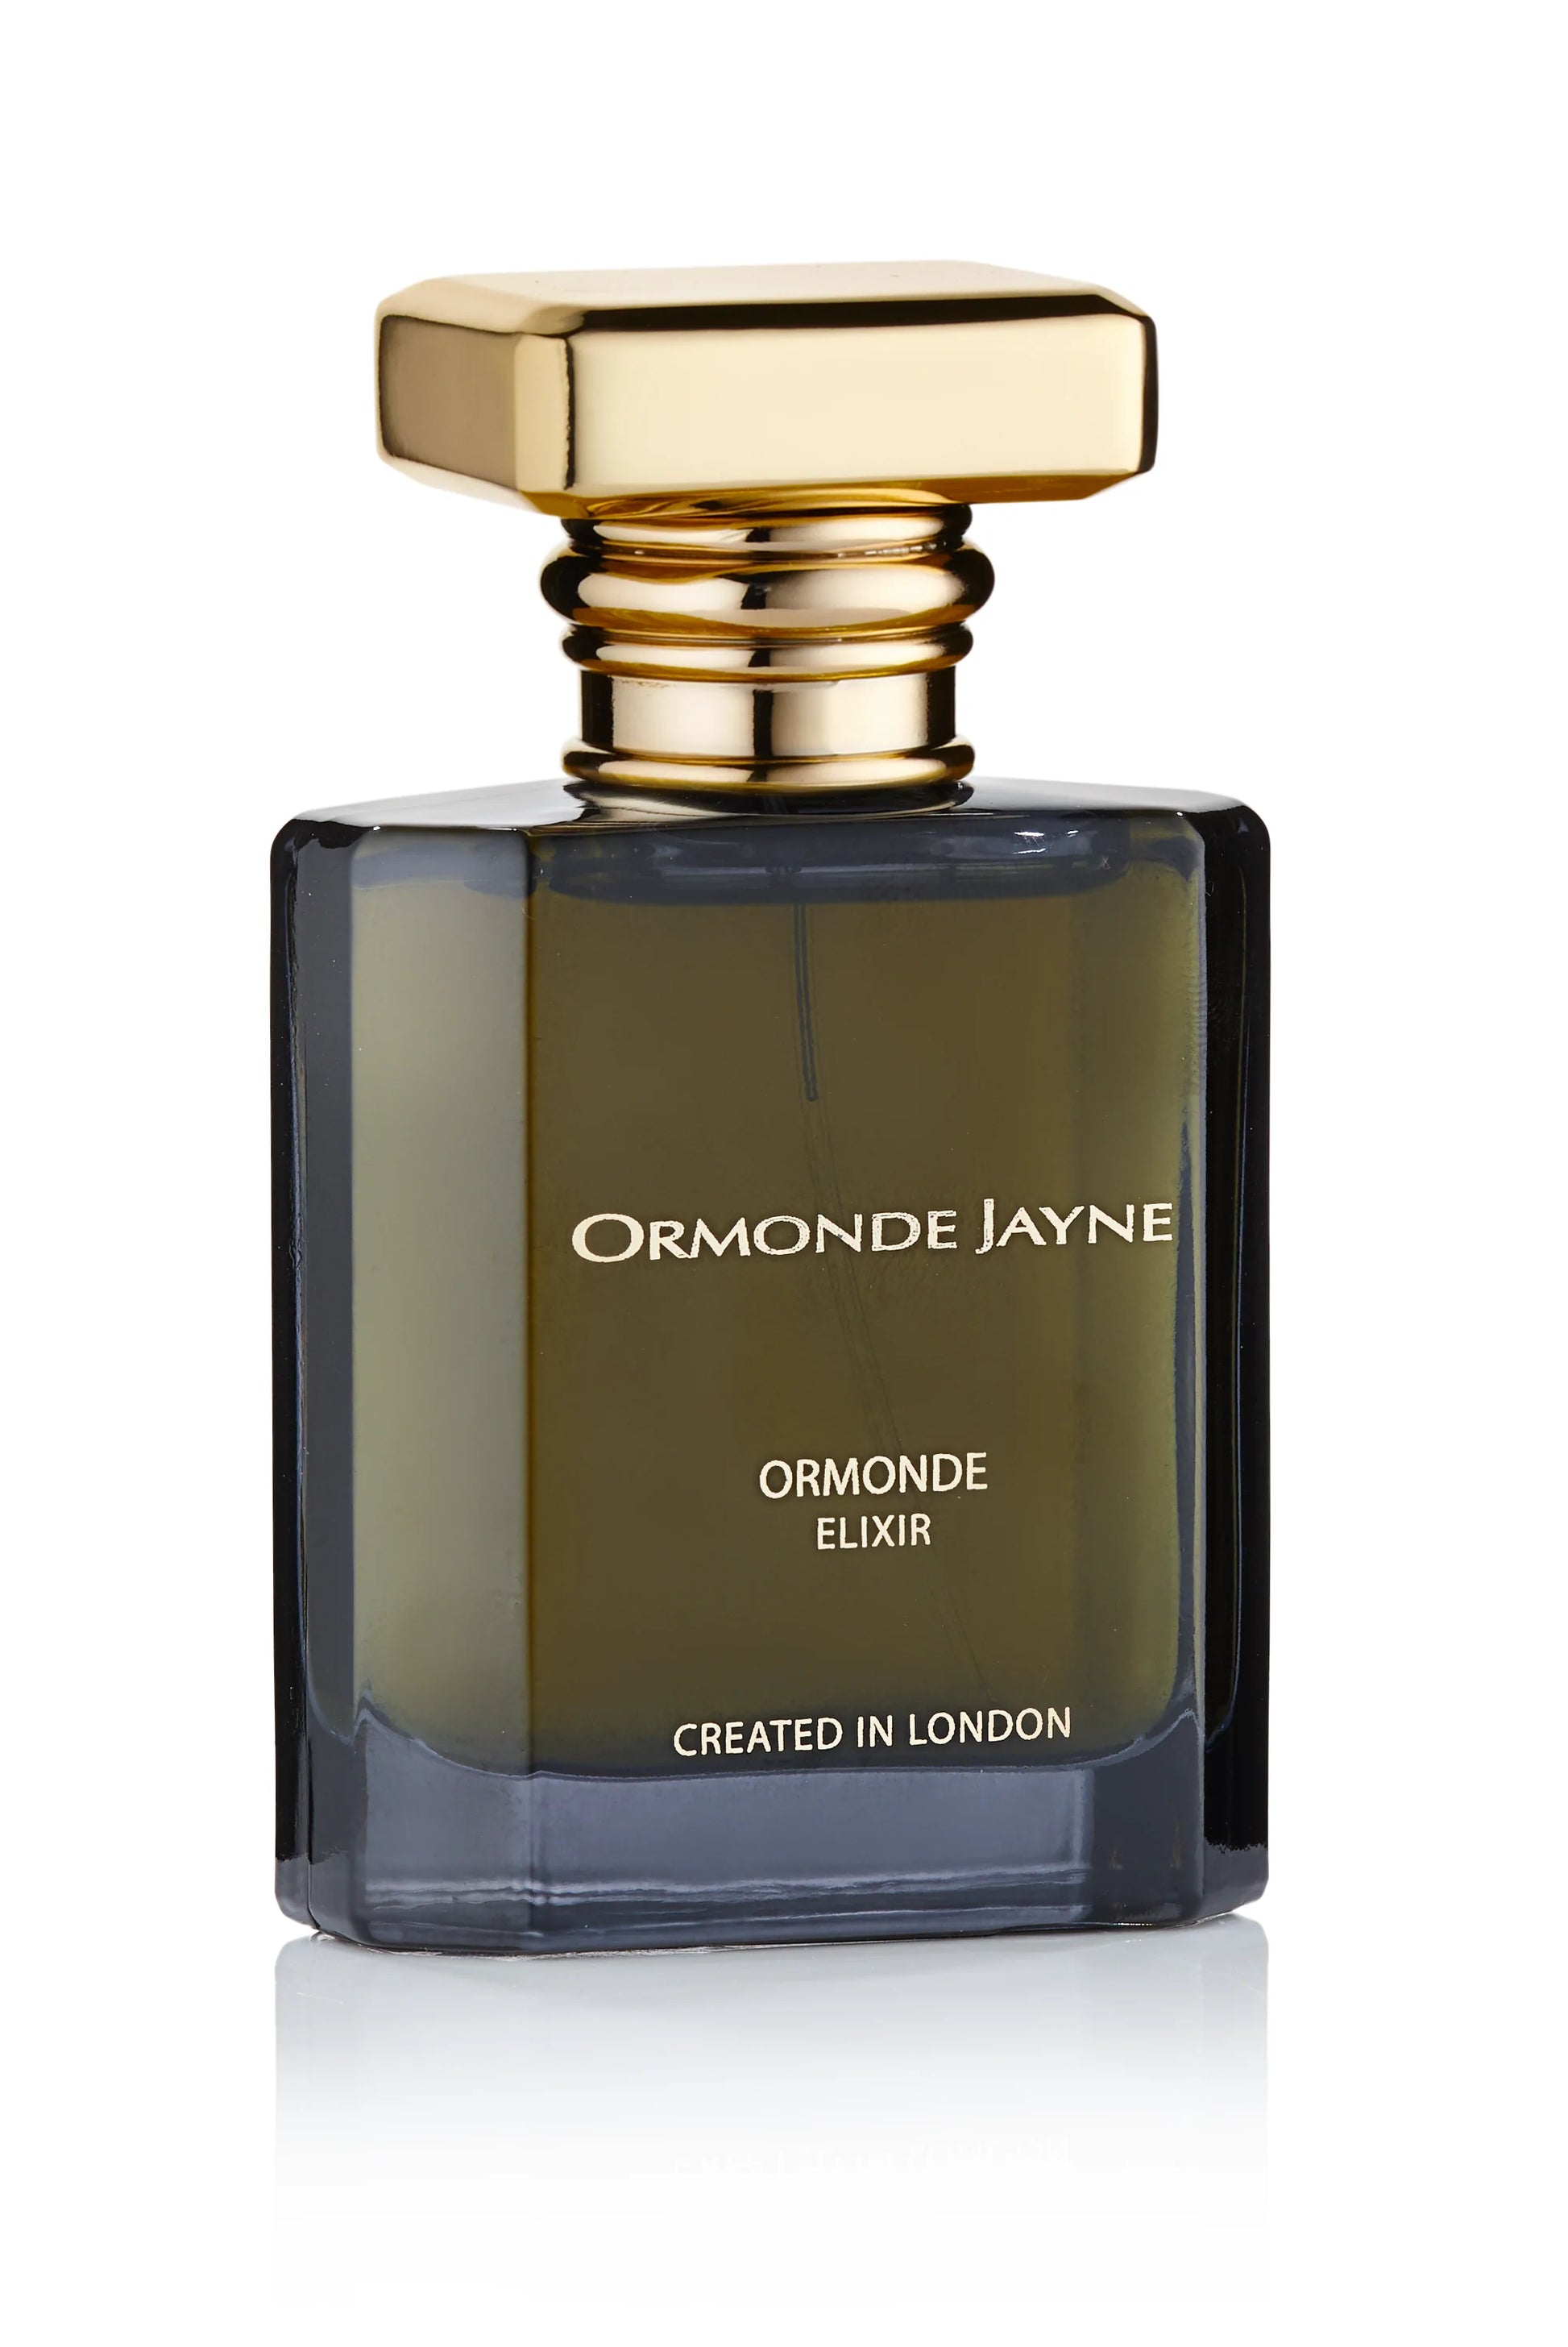 Ormonde Jayne Ormonde Elixir 2ml 0.06 fl. oz mostră oficială de parfum